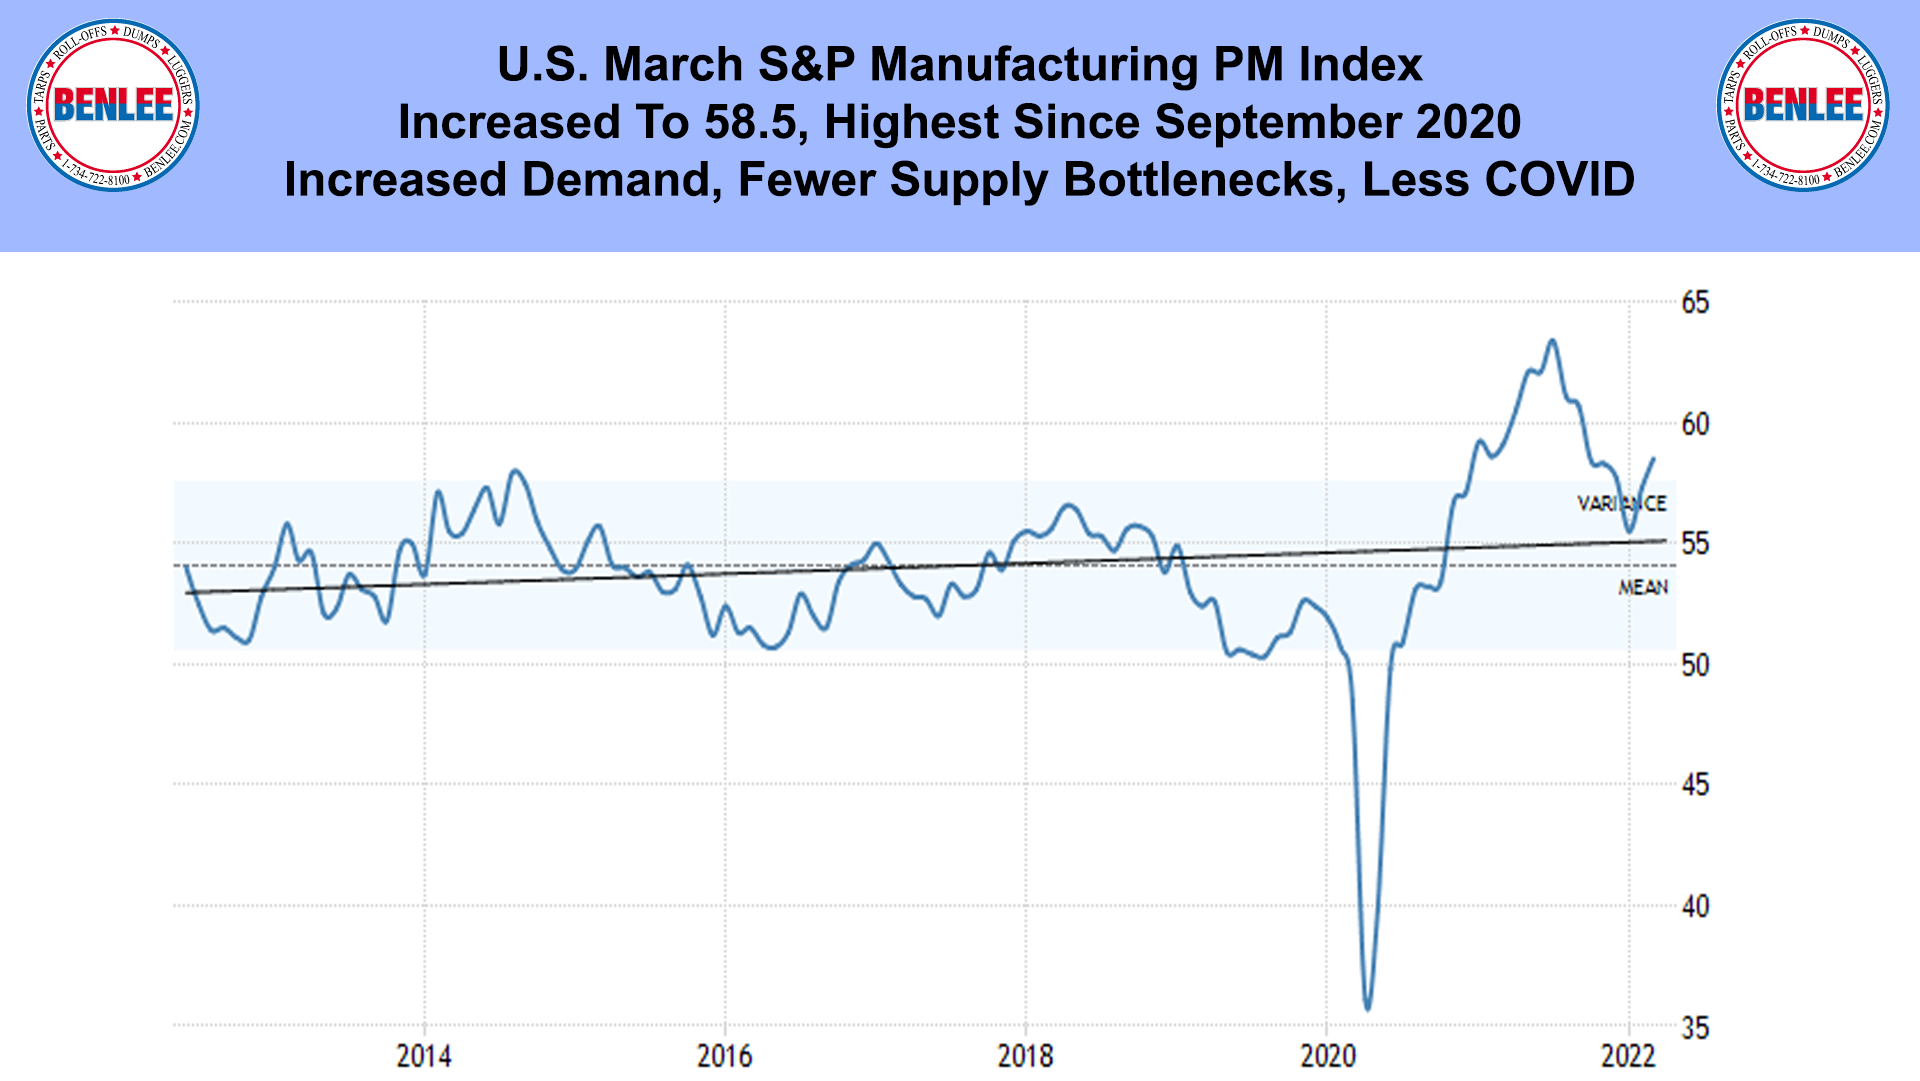 U.S. March S&P Manufacturing PM Index